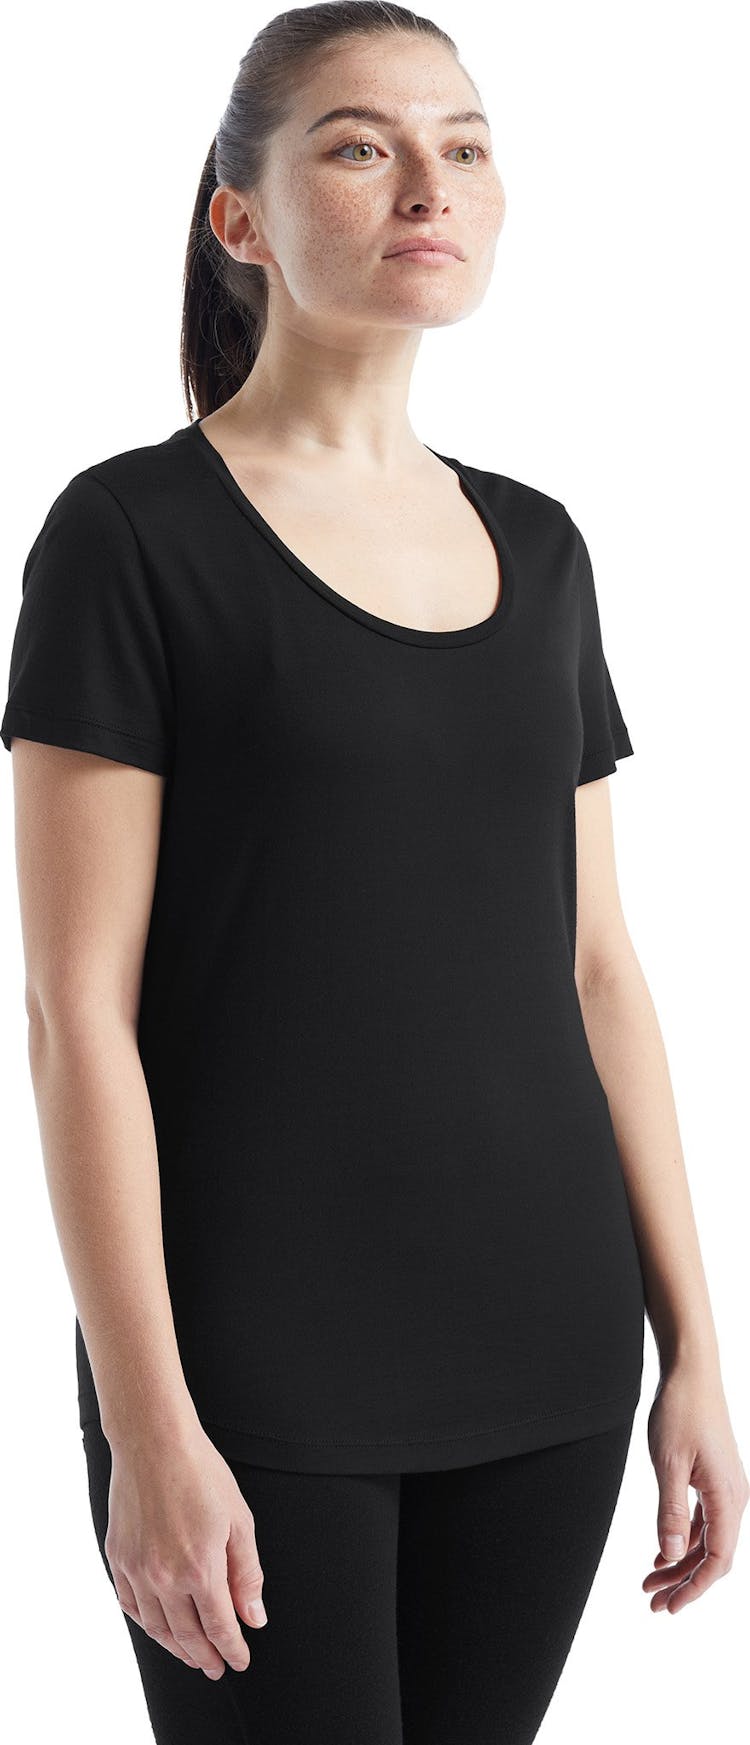 Numéro de l'image de la galerie de produits 8 pour le produit T-shirt à encolure dégagée à manches courtes Sphere II - Femme